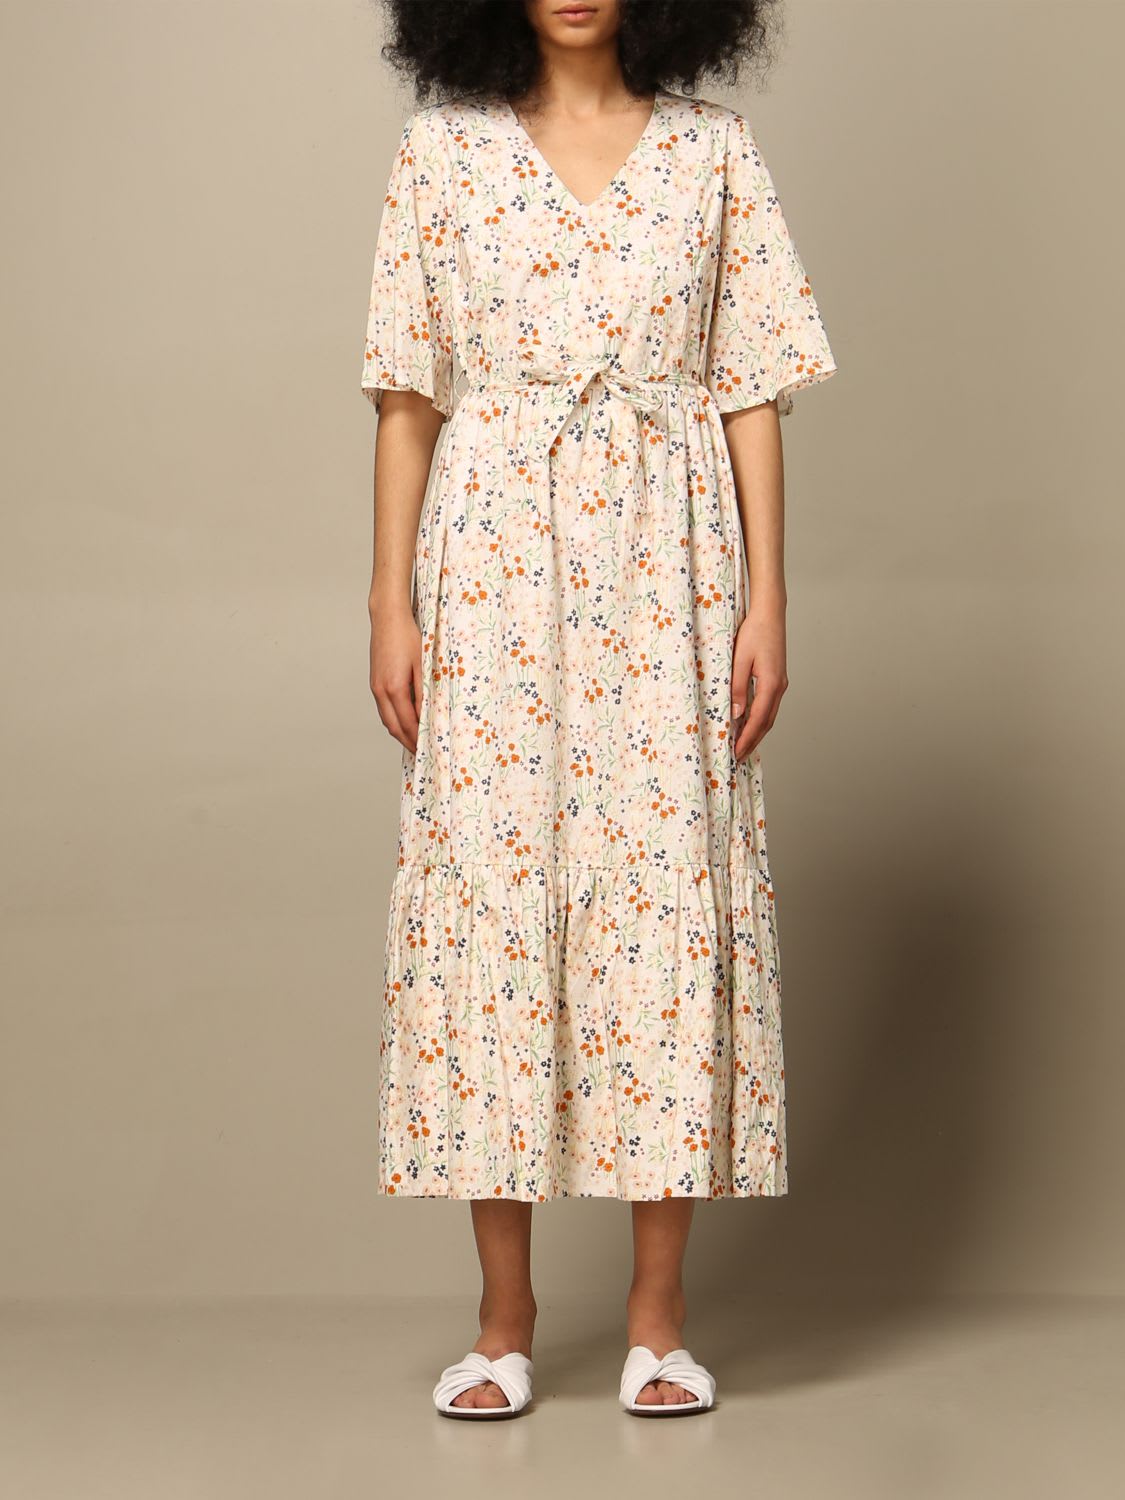 Photo of  Lautre Chose Dress Lautre Chose Dress In Patterned Cotton- shop LAutre Chose Dresses online sales